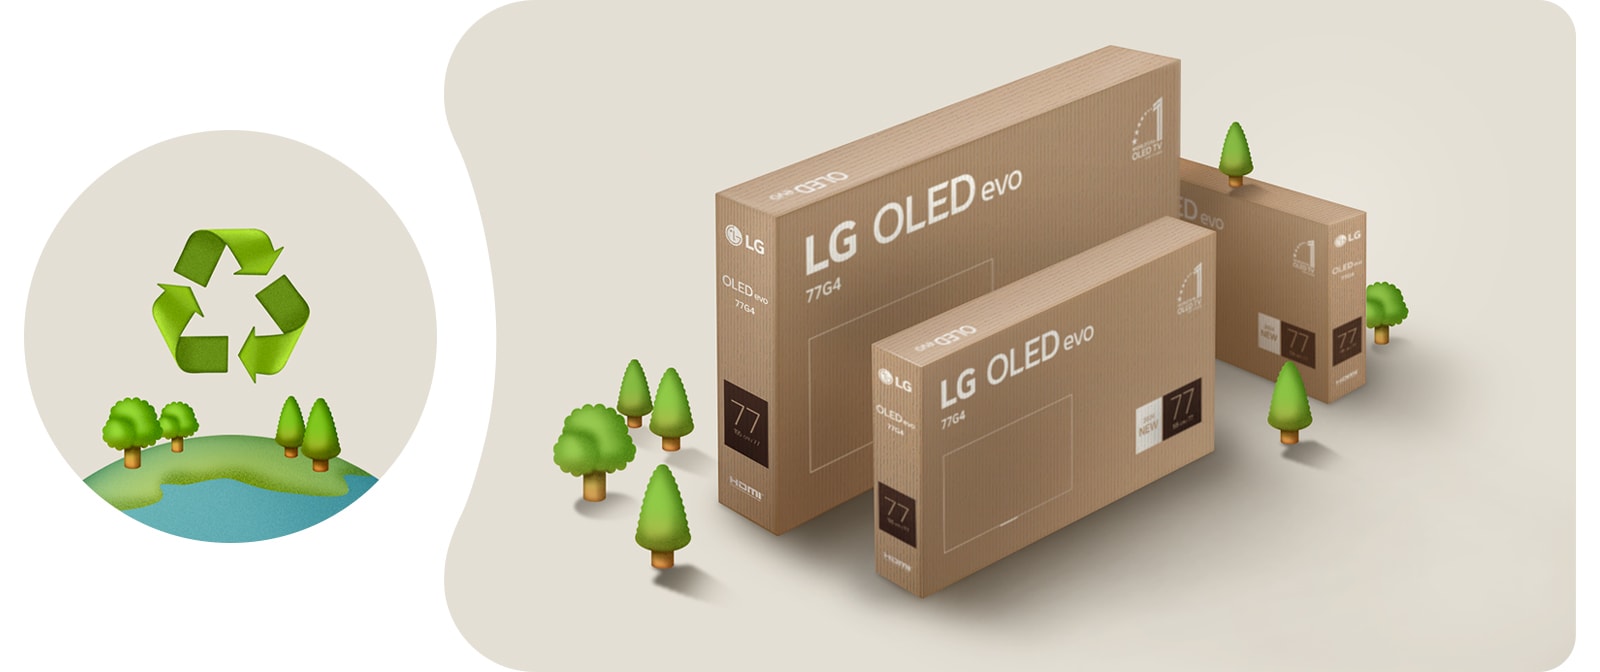 LG OLED-Verpackung vor einem beigen Hintergrund mit illustrierten Bäumen.